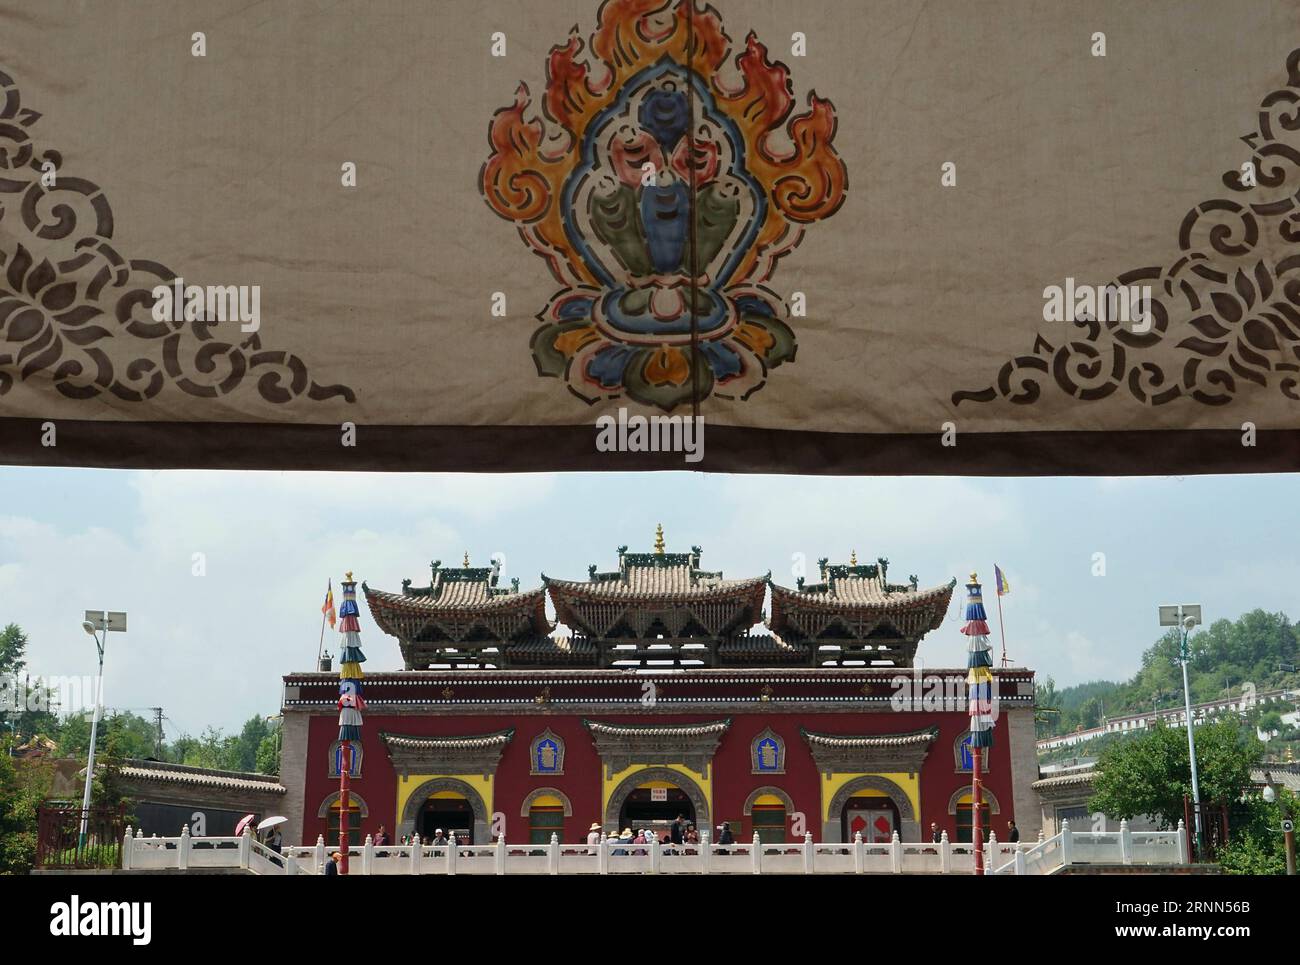 (170625) -- LANZHOU, 25 giugno 2017 -- foto scattata il 22 giugno 2017 mostra il monastero di Kumbum nella contea di Huangzhong, nella provincia del Qinghai della Cina nordoccidentale. ) (wyo) CHINA-GANSU-QINGHAI-TOURISM-SCENARIOS (CN) LixAn PUBLICATIONxNOTxINxCHN Lanzhou giugno 25 2017 la foto scattata IL 22 giugno 2017 mostra il monastero di Kumbum nella contea di Huang Zhong nella provincia di Qinghai della Cina nord-occidentale wyo China Gansu Qinghai Tourism Scenery CN LixAn PUBLICATIONxNOTxINXCHN Foto Stock